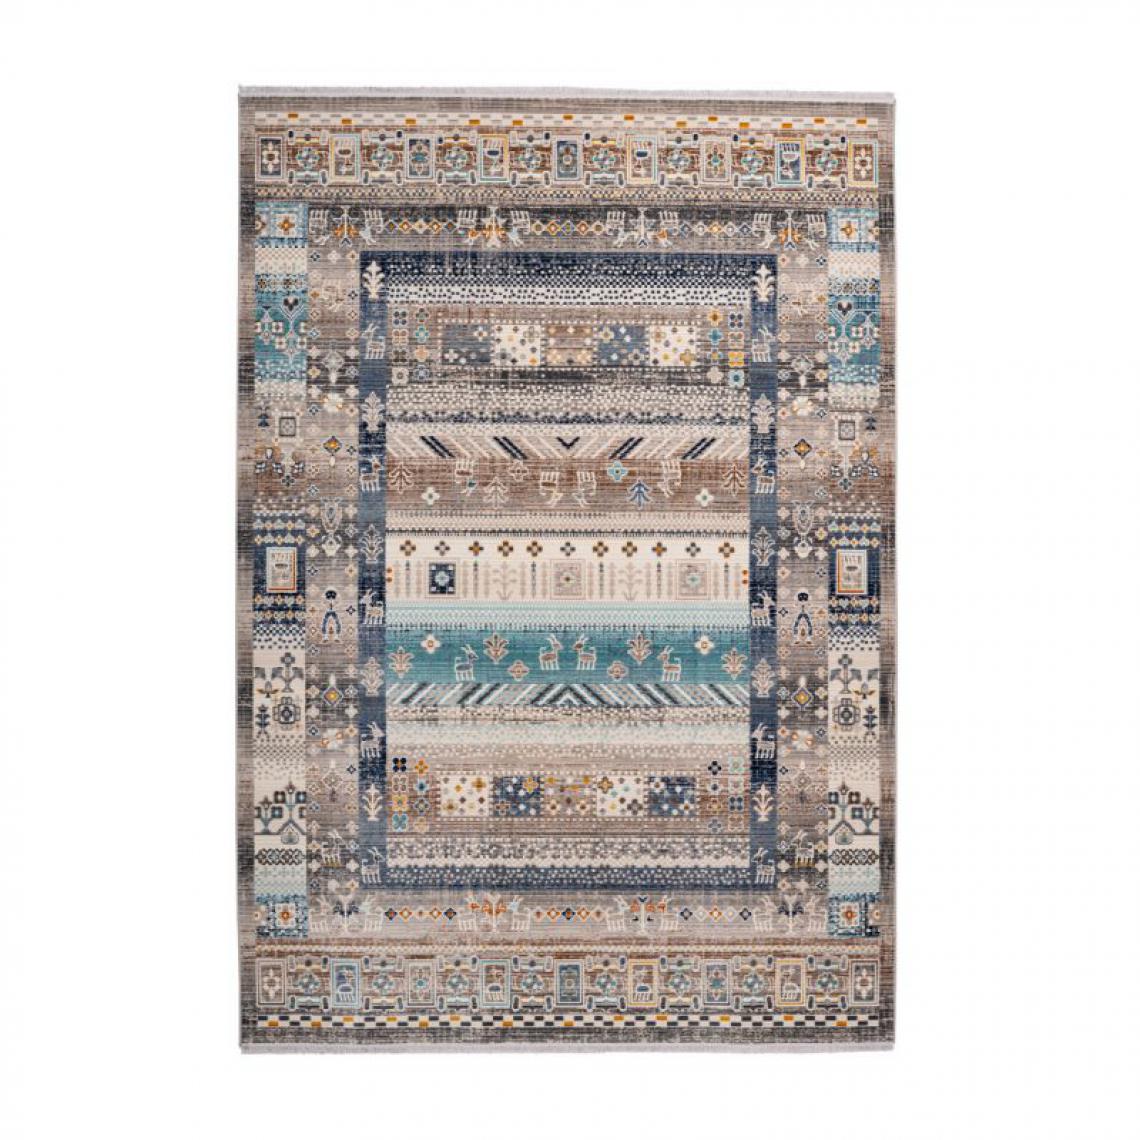 Paris Prix - Tapis Ethnique à Poils Courts Anouk Marron & Bleu 160 x 230 cm - Tapis